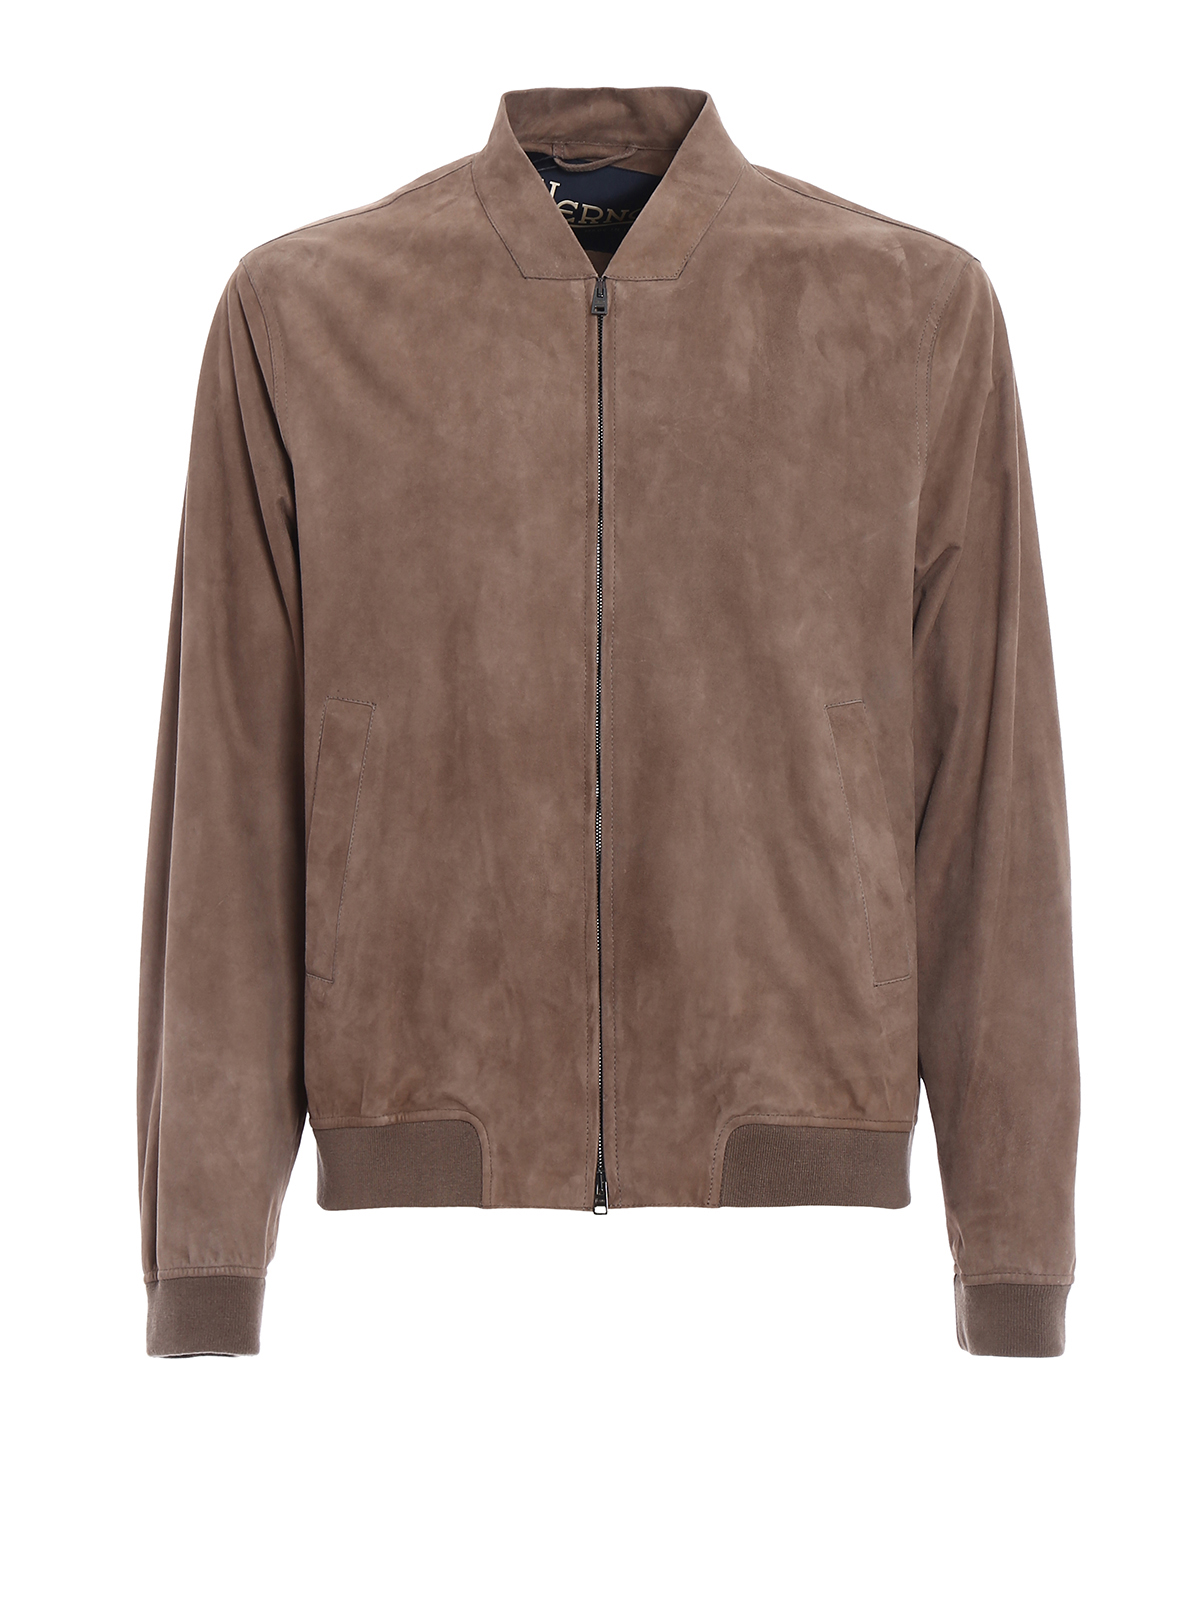 Leather jacket Herno - Soft nubuck leather bomber jacket - PL0062U180548600